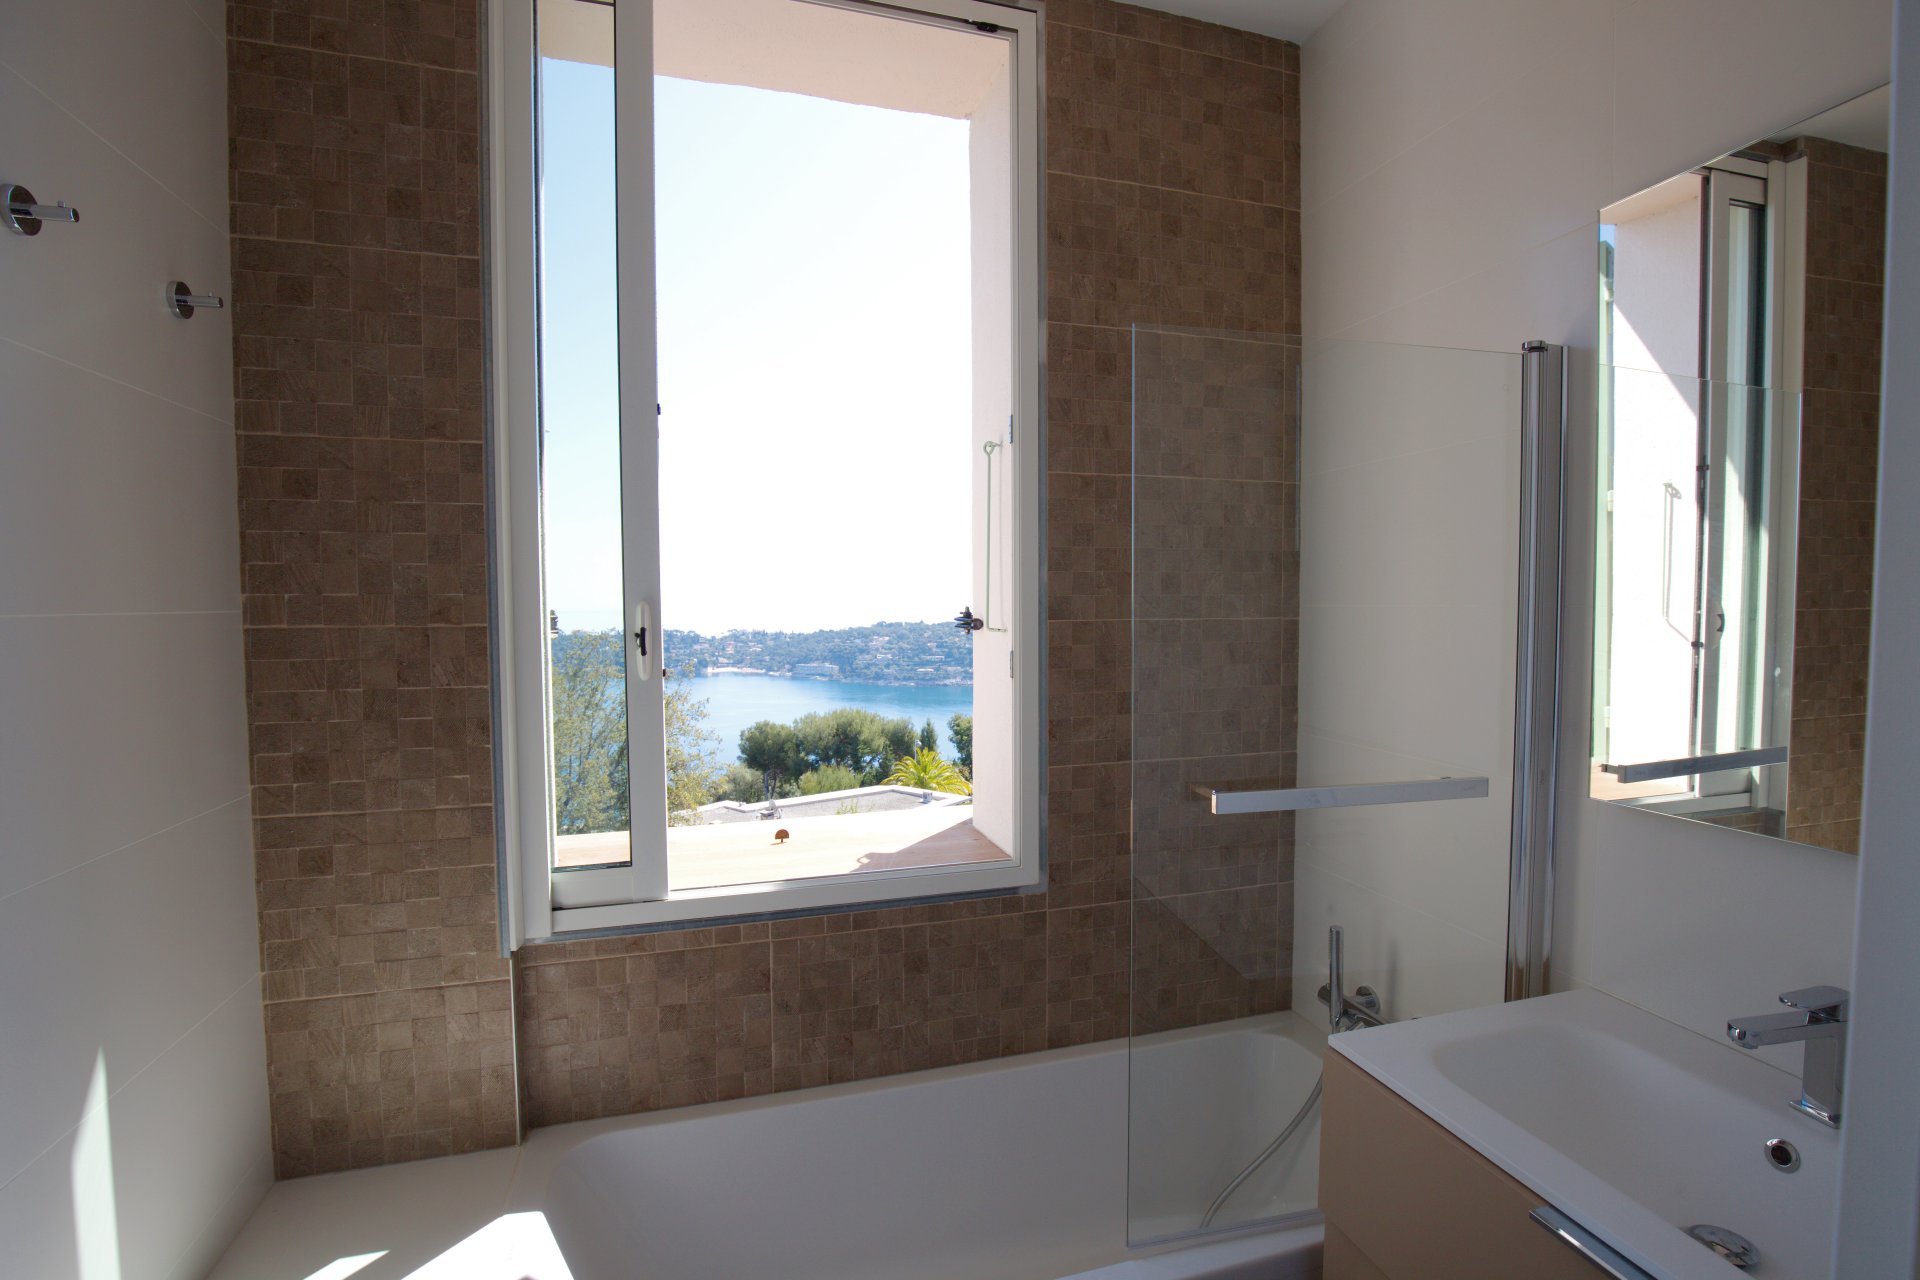 Вид из окон ванной комнаты на вилле вблизи Кап-Ферра